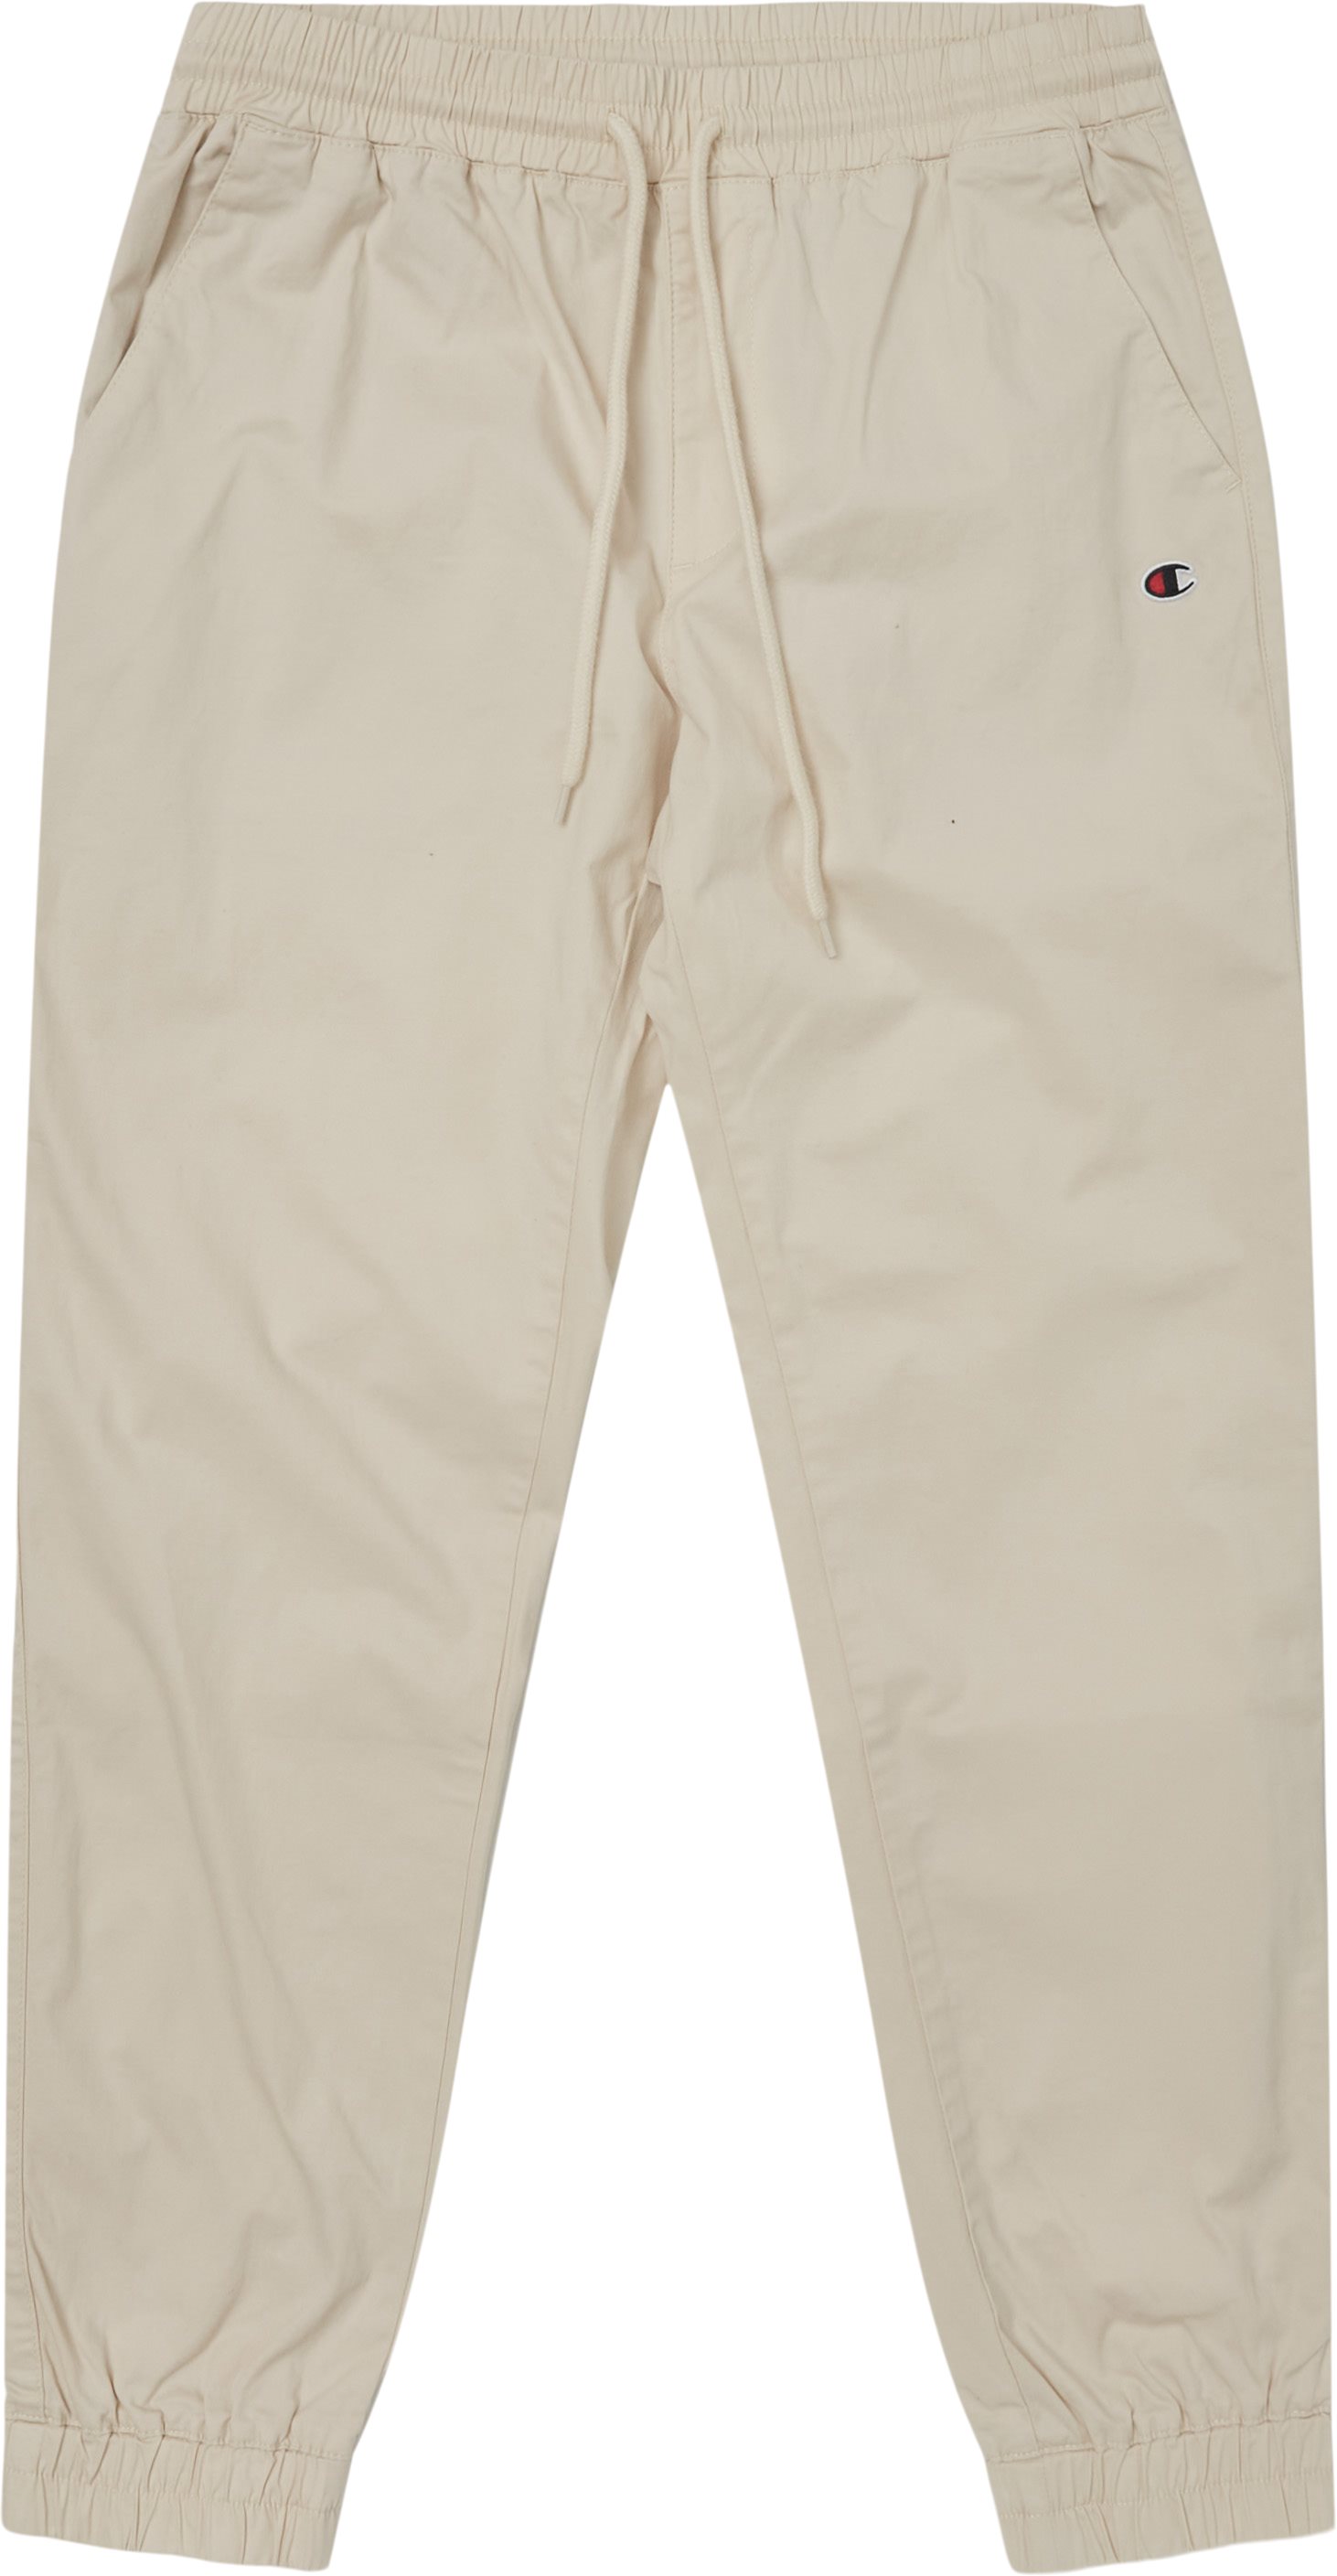 Elastic Cuff Pants - Trousers - Regular fit - Sand